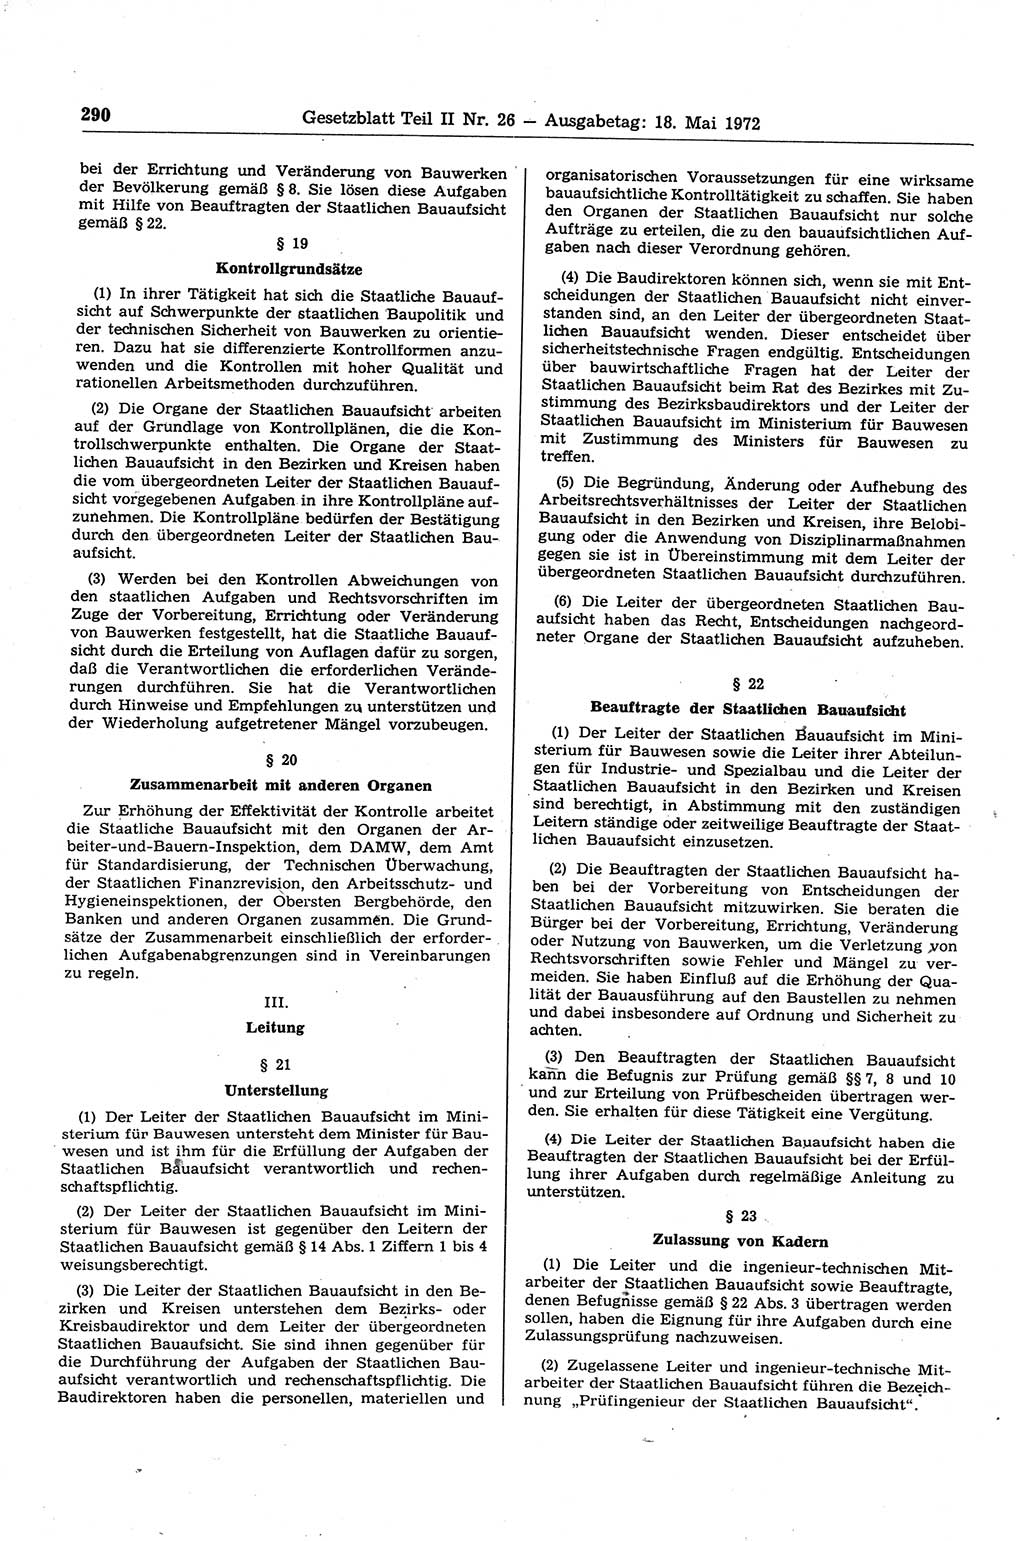 Gesetzblatt (GBl.) der Deutschen Demokratischen Republik (DDR) Teil ⅠⅠ 1972, Seite 290 (GBl. DDR ⅠⅠ 1972, S. 290)